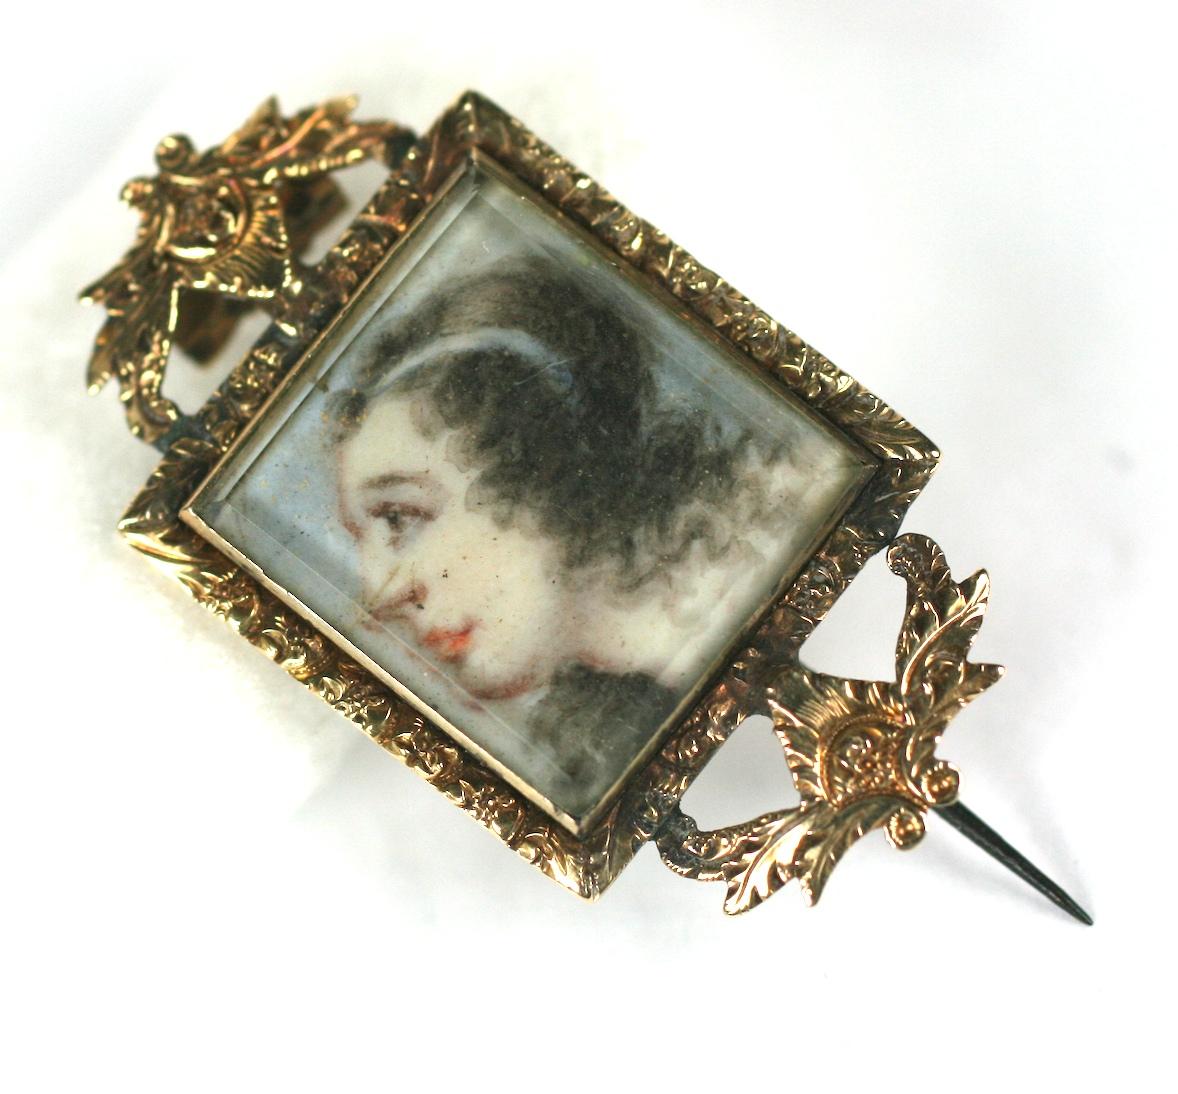 Seltene georgianische Lover's Eye Brosche aus dem späten 1700's. Gemaltes Miniaturporträt einer jungen Frau, die mit einem weißen Band im Haar nach oben blickt, mit einem gemalten Auge des Liebhabers auf der Vorderseite, beide unter Glasscheiben.